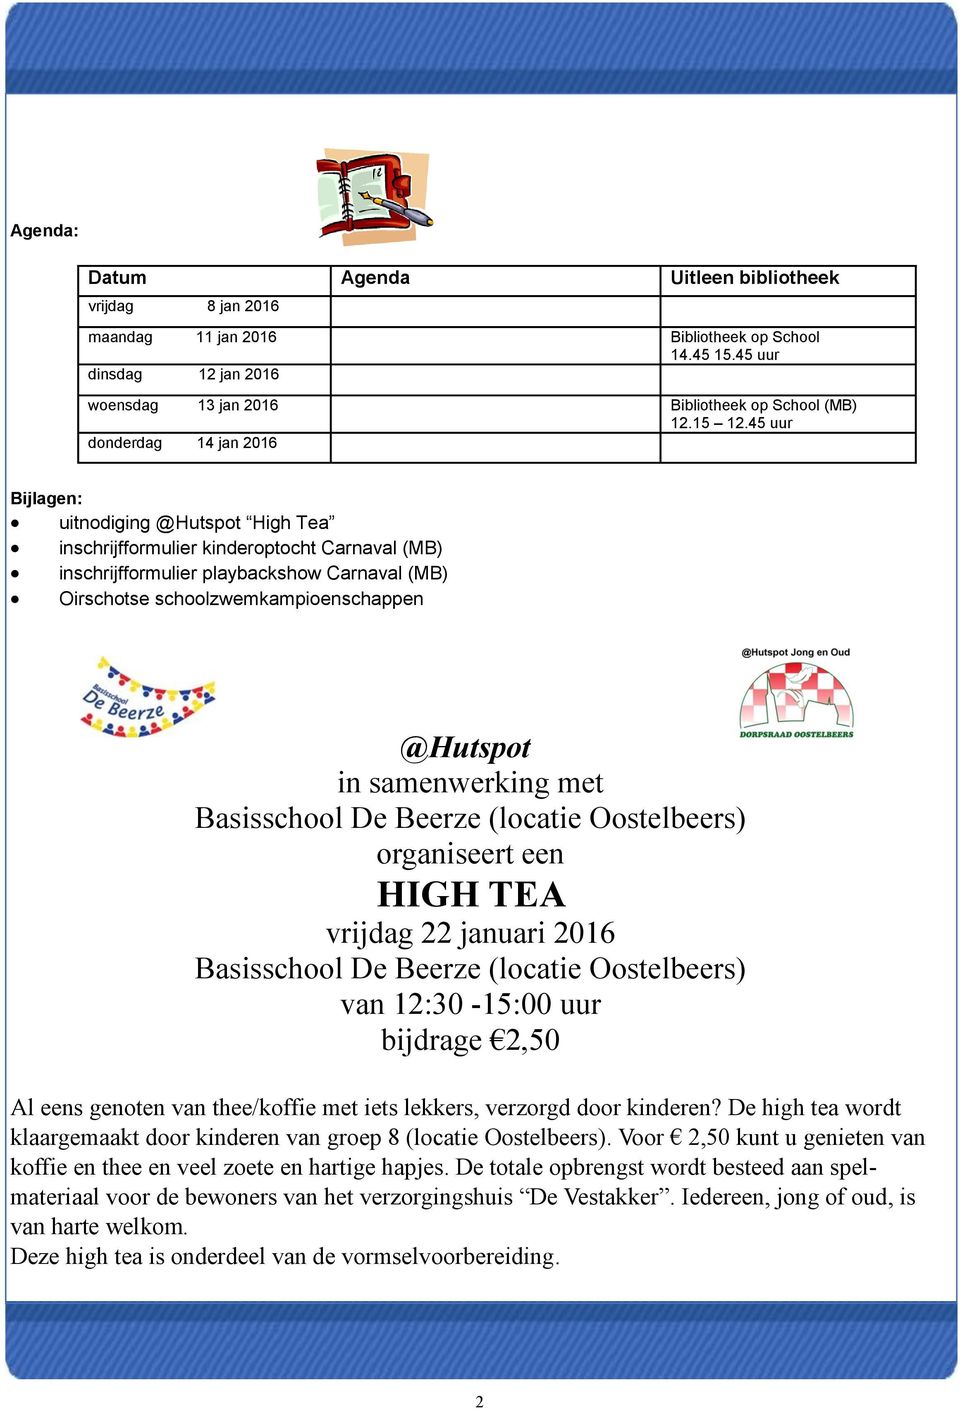 @Hutspot in samenwerking met Basisschool De Beerze (locatie Oostelbeers) organiseert een HIGH TEA vrijdag 22 januari 2016 Basisschool De Beerze (locatie Oostelbeers) van 12:30-15:00 uur bijdrage 2,50